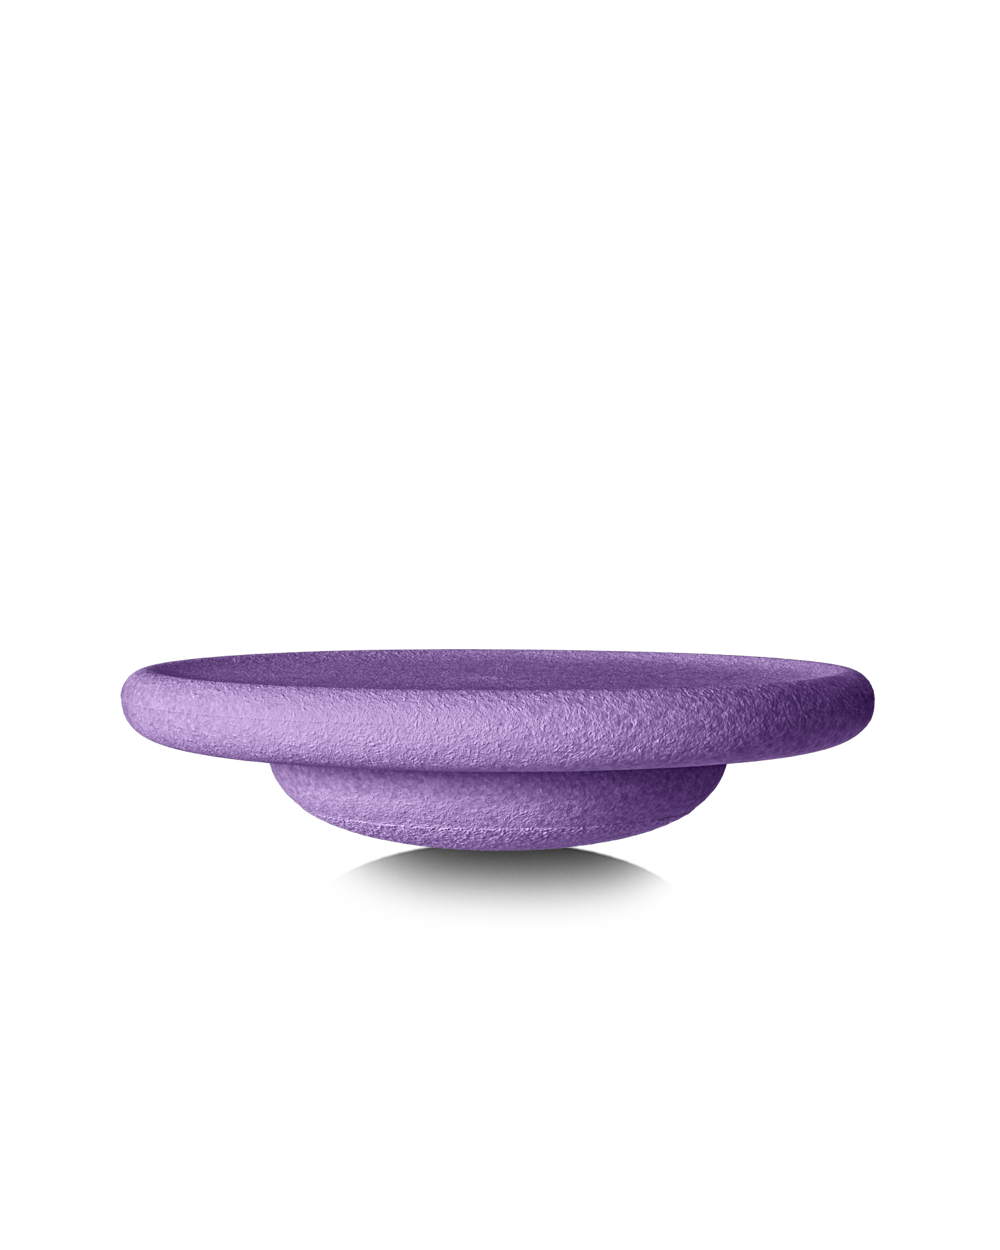 Stapelstein balanceerbord - Violet / Paars